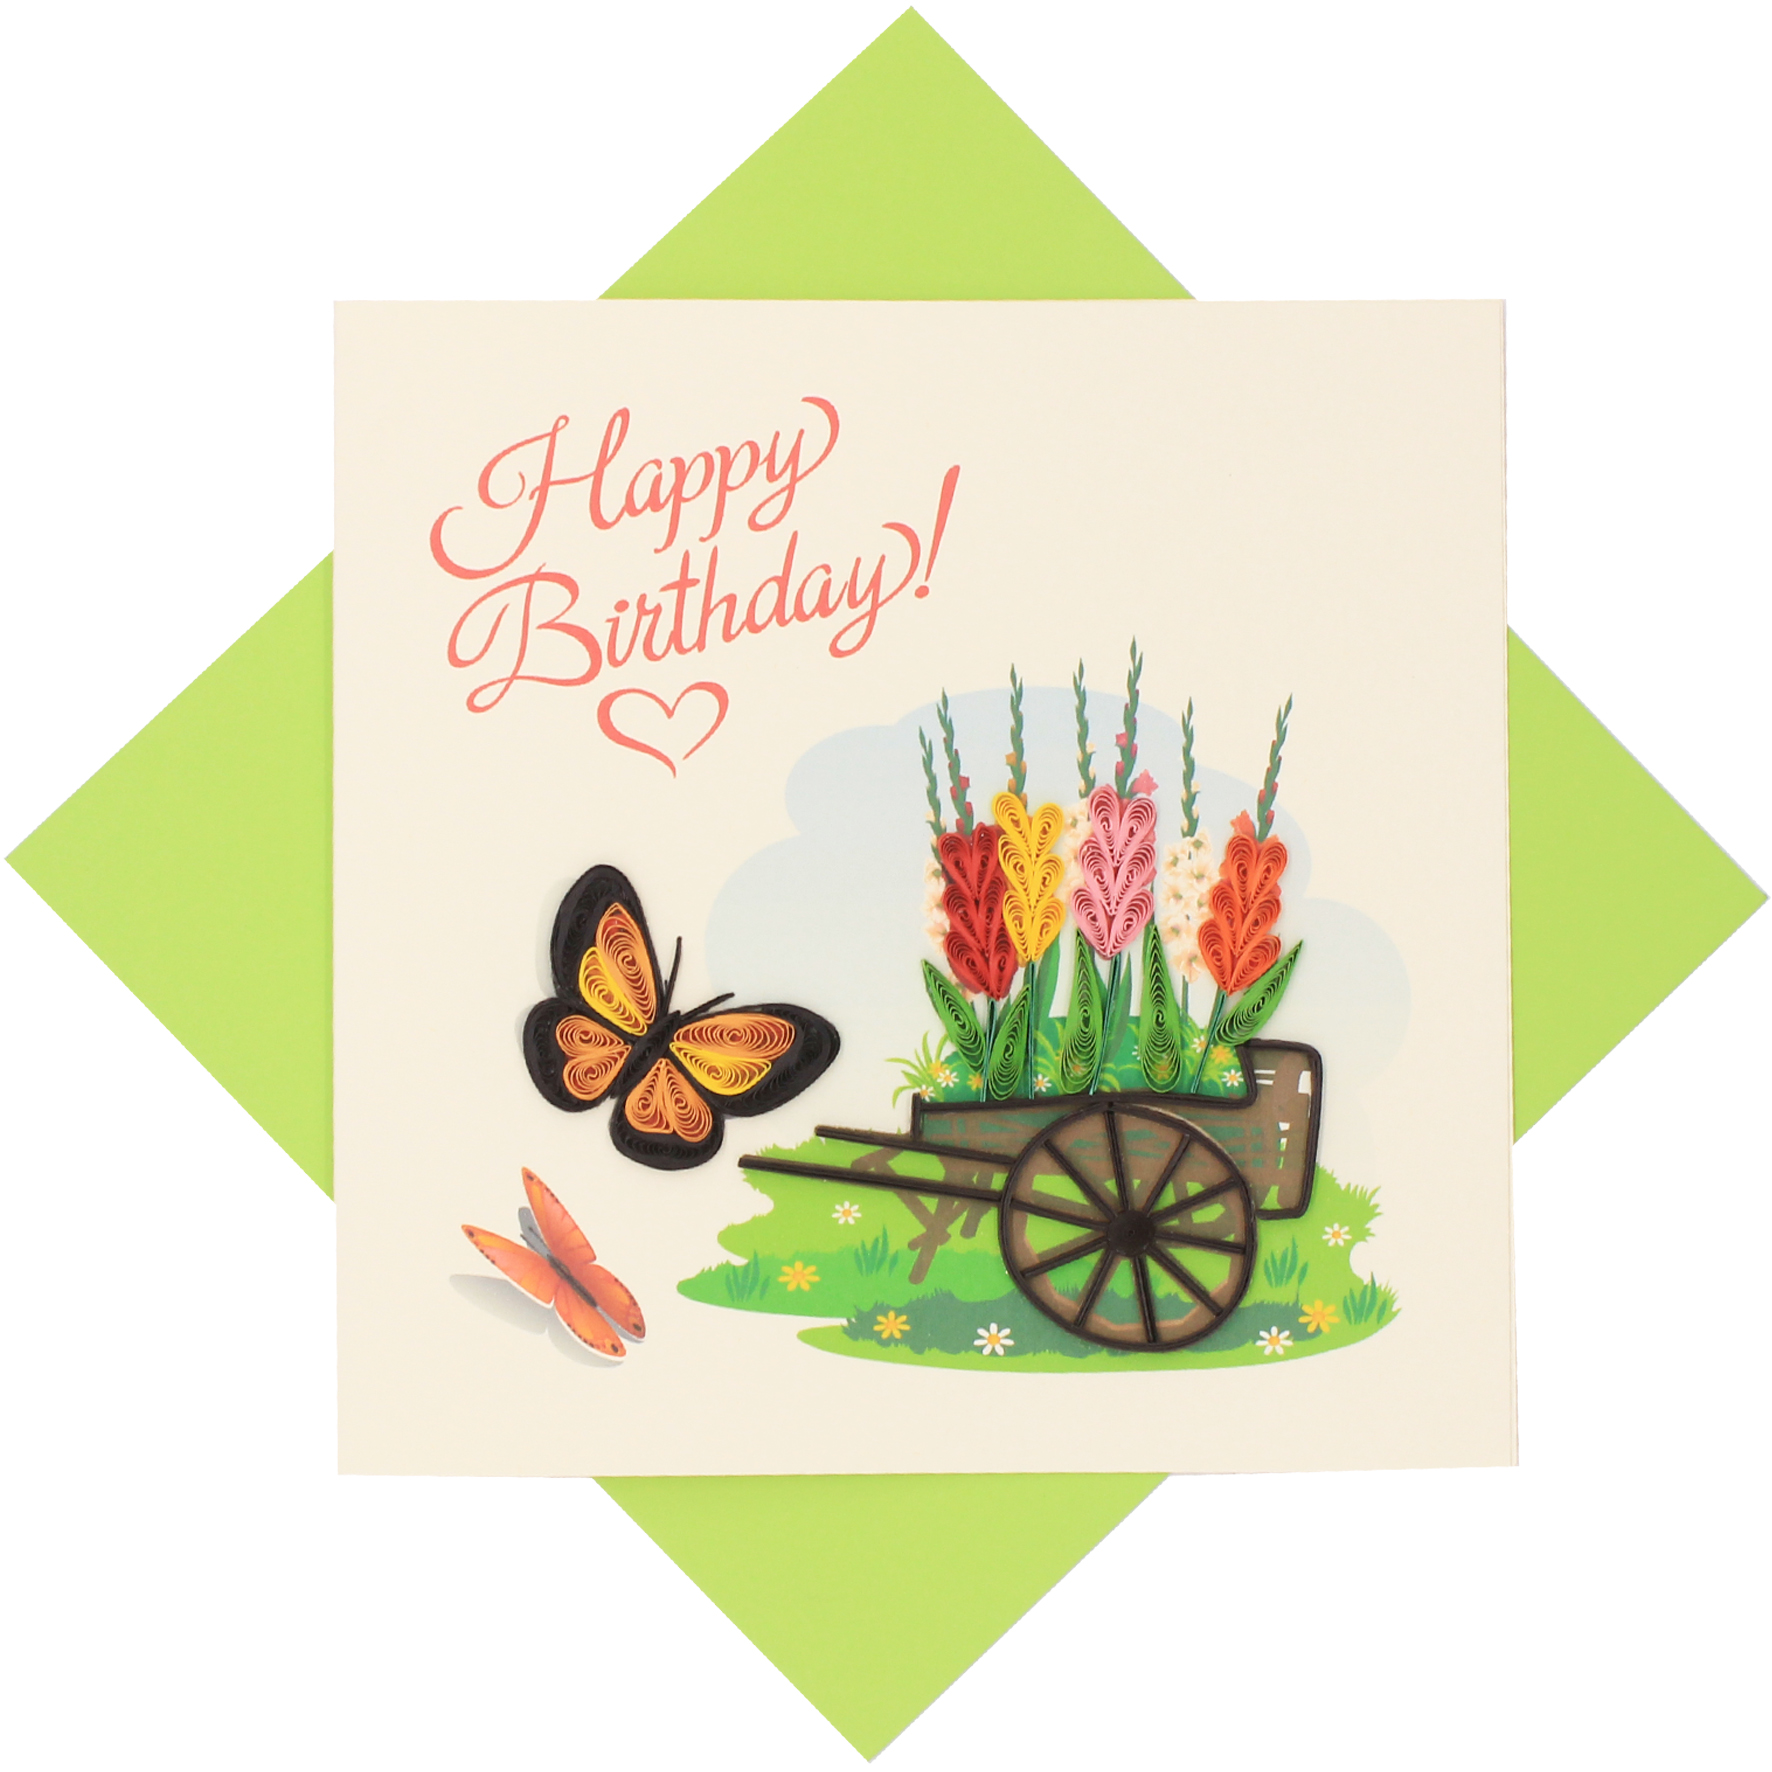 Thiệp Handmade - Thiệp Chúc mừng sinh nhật Vườn hoa mùa xuân nghệ thuật giấy xoắn (Quilling Card) - Tặng Kèm Khung Giấy Để Bàn - Thiệp chúc mừng sinh nhật, kỷ niệm, tình yêu, cảm ơn...